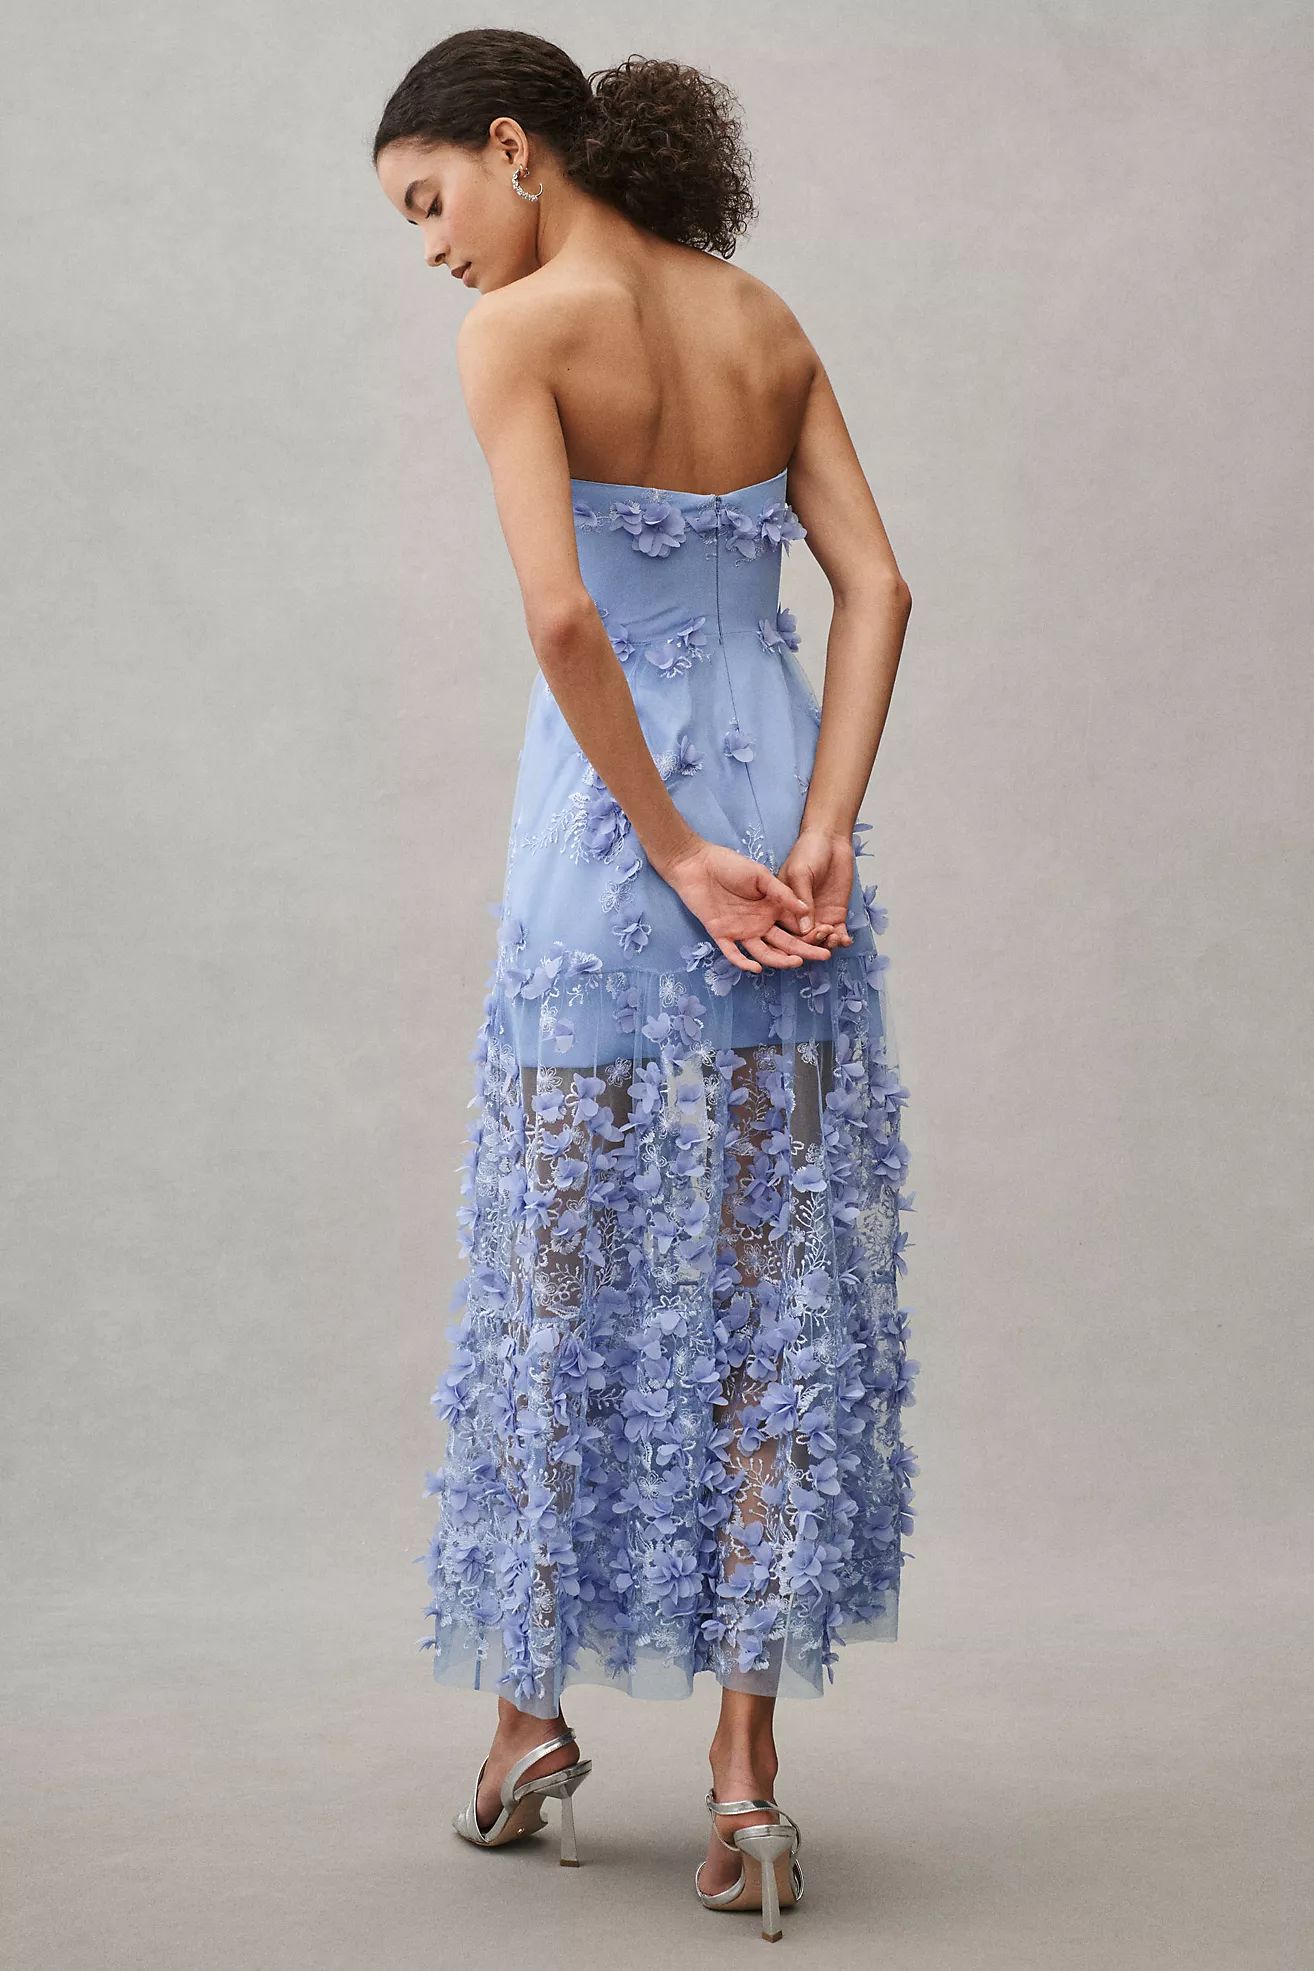 Helsi Audrey Square-Neck Floral Applique Sheer Midi Dress | Anthropologie (US)